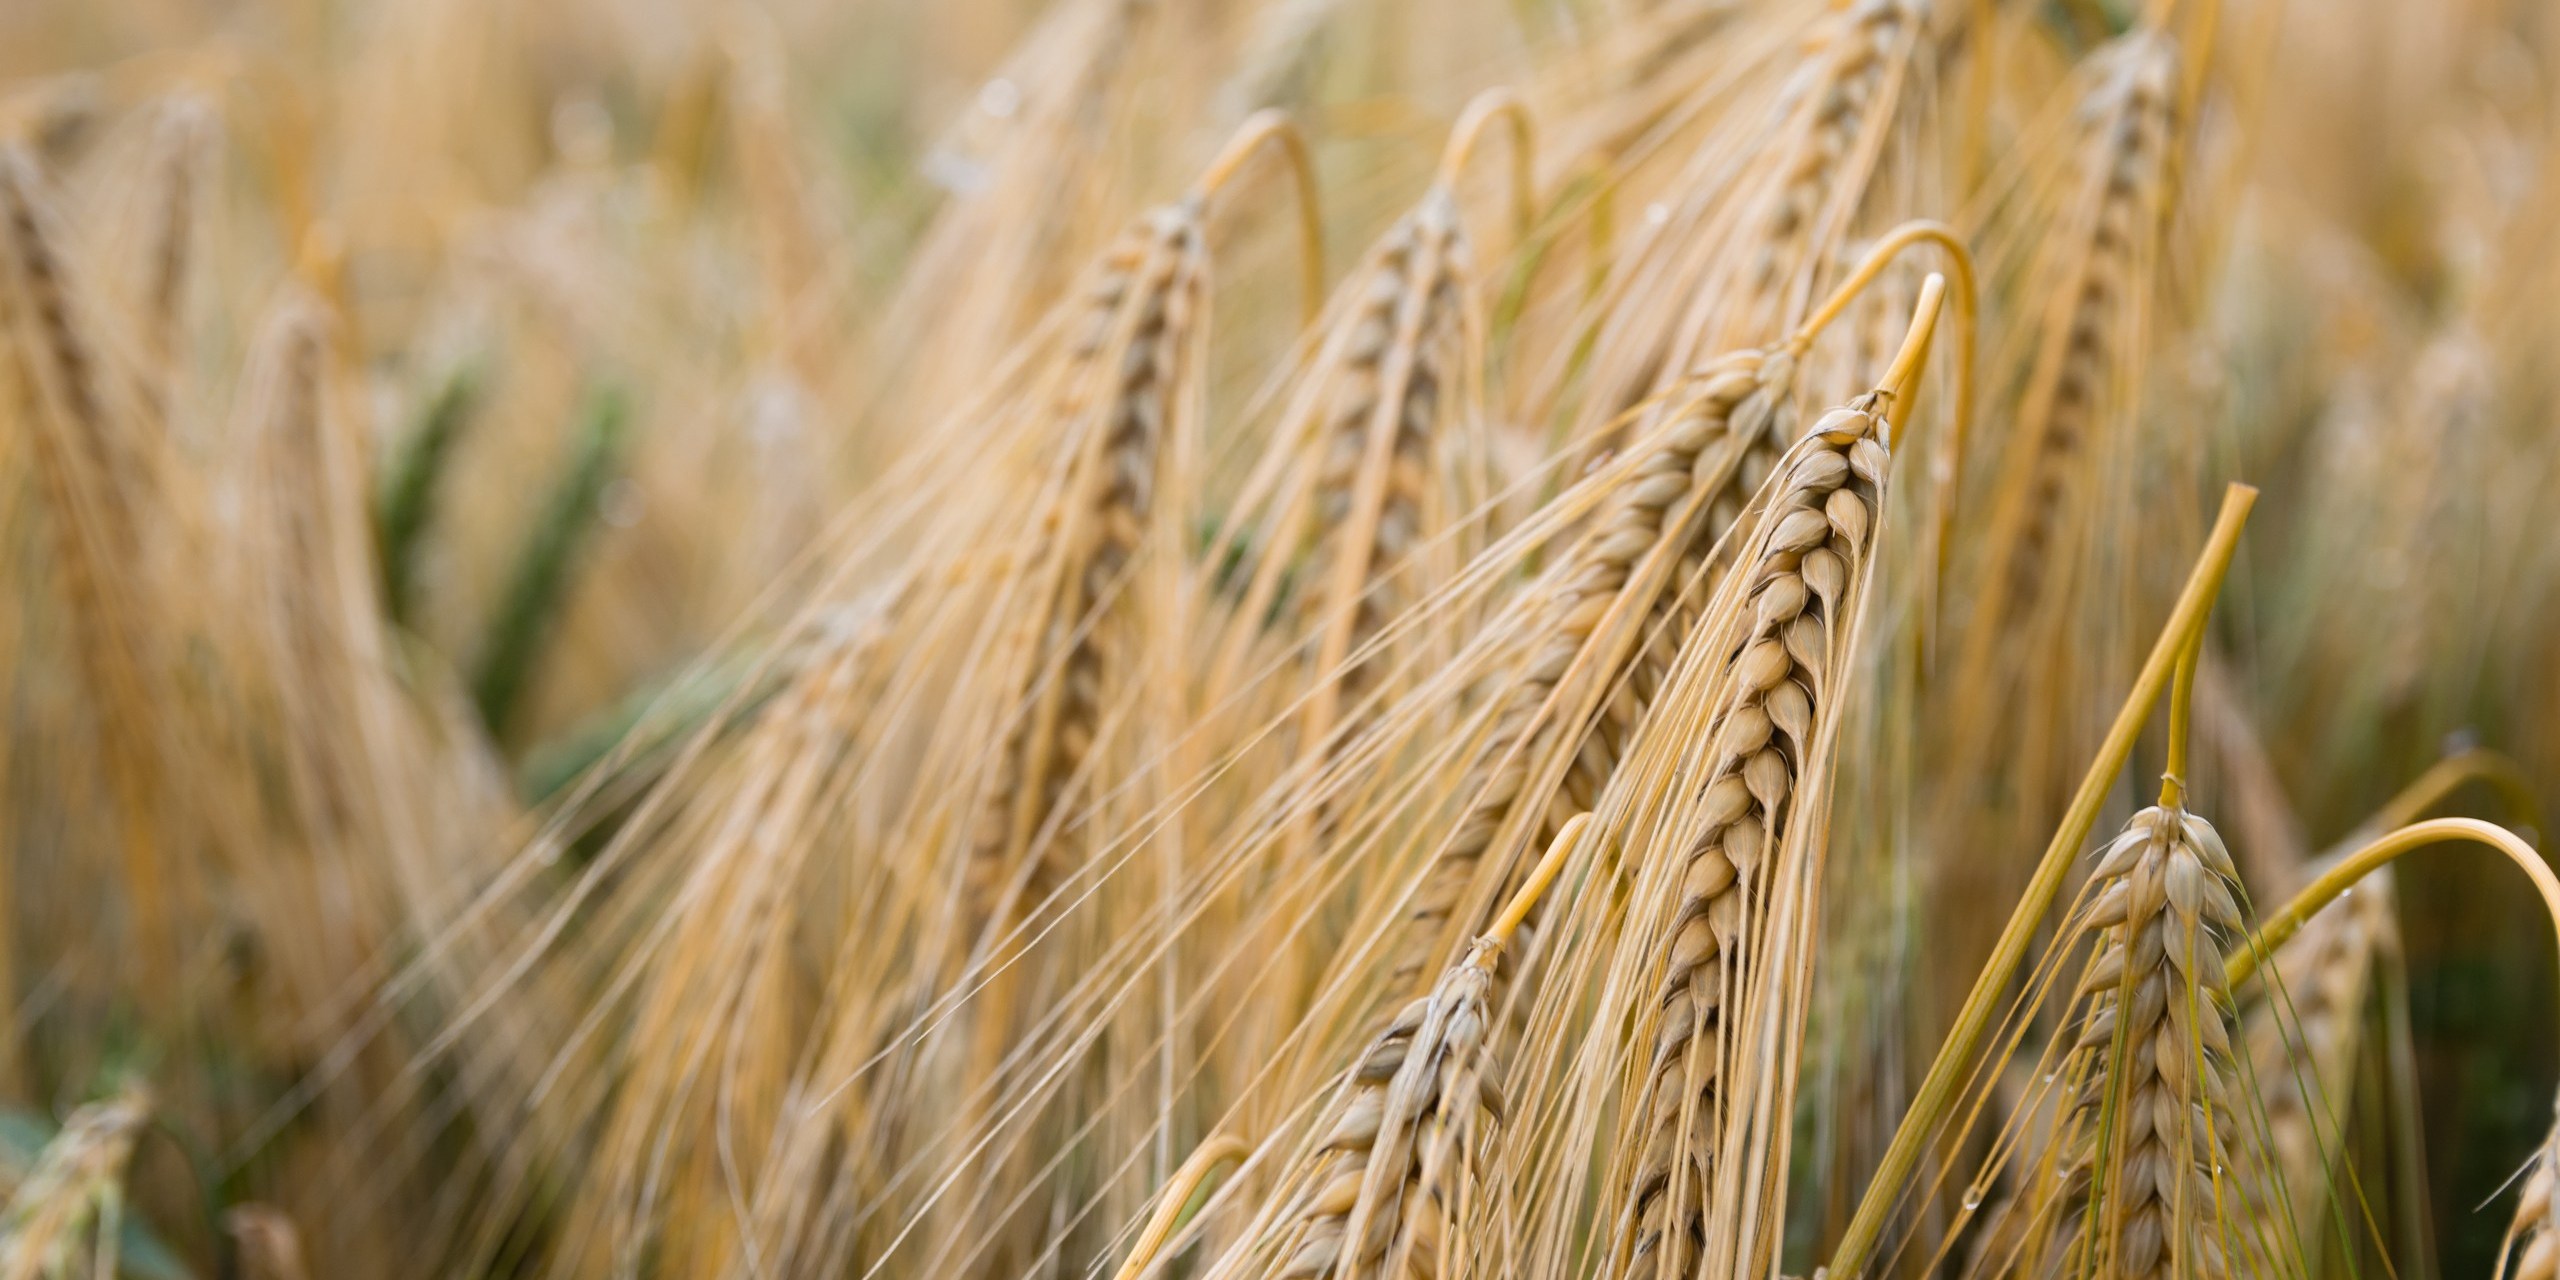 Wheat Grain in Field